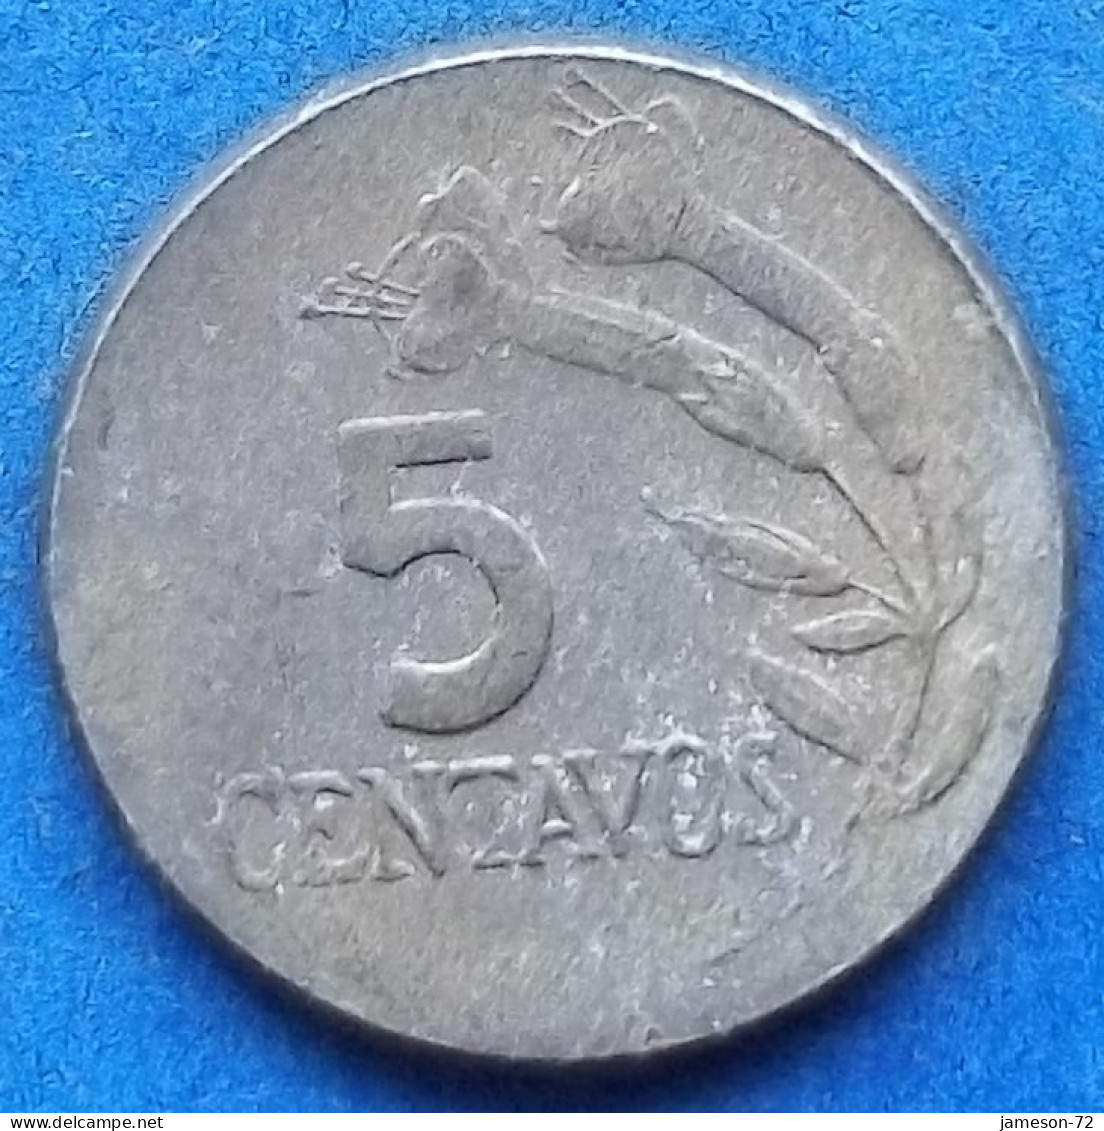 PERU - 5 Centavos 1970 "Flower Sprig" KM# 244.2 Decimal Coinage (1893-1986) - Edelweiss Coins - Perú